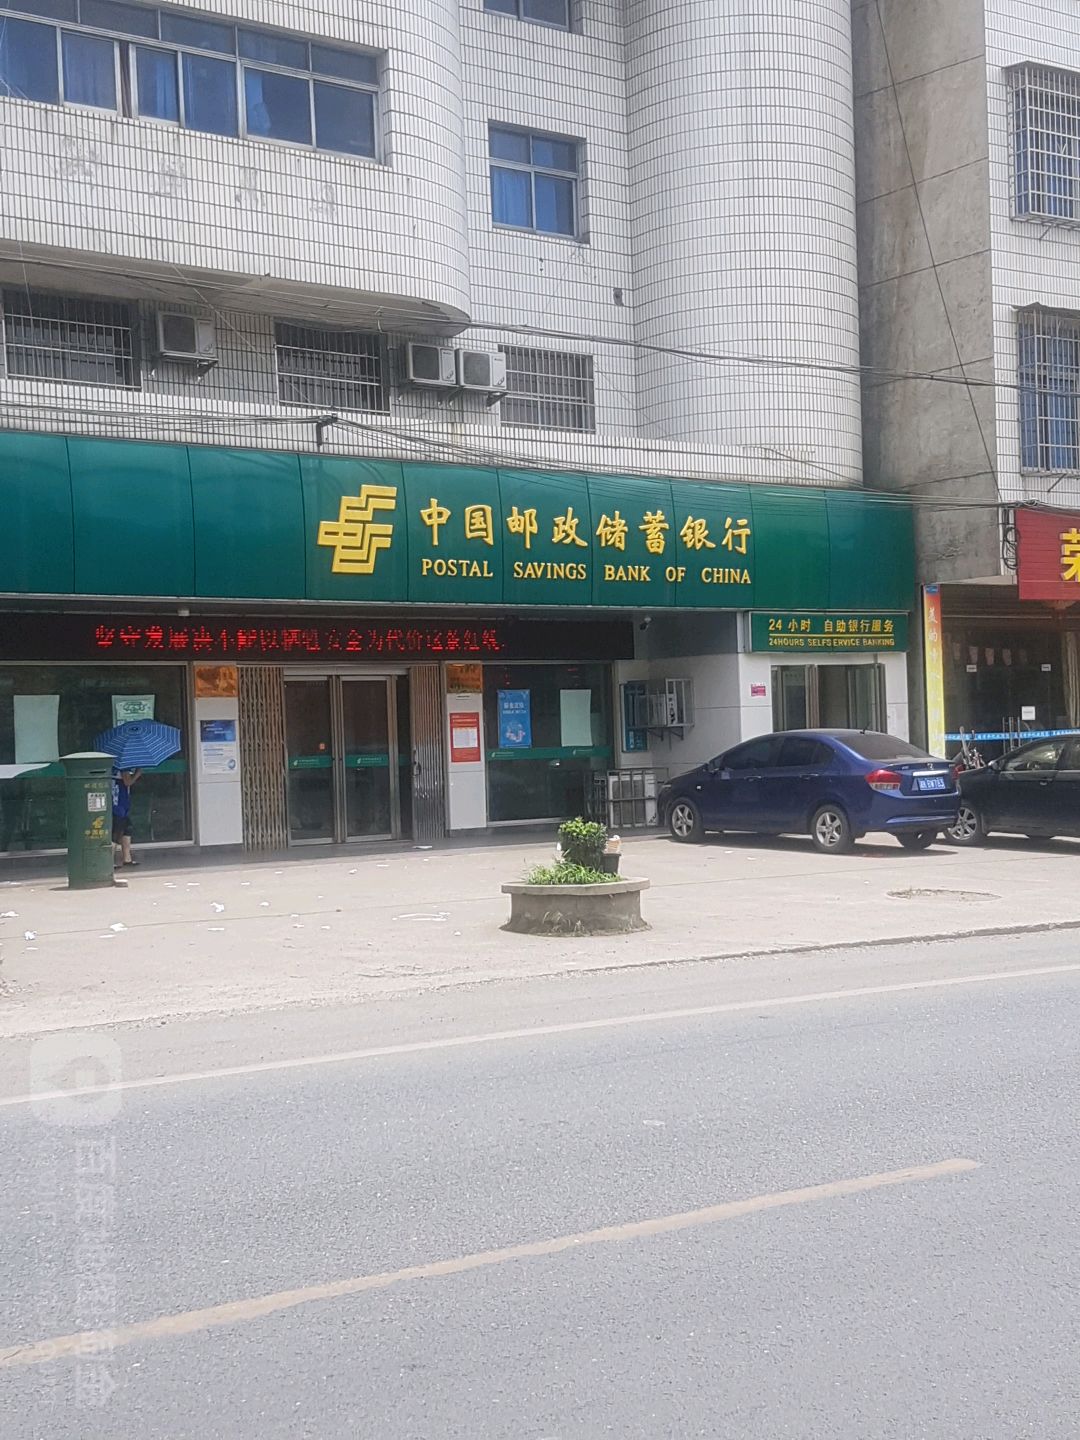 中國郵政儲蓄銀行24小時自助銀行(冷水江市鐸山鎮營業所)